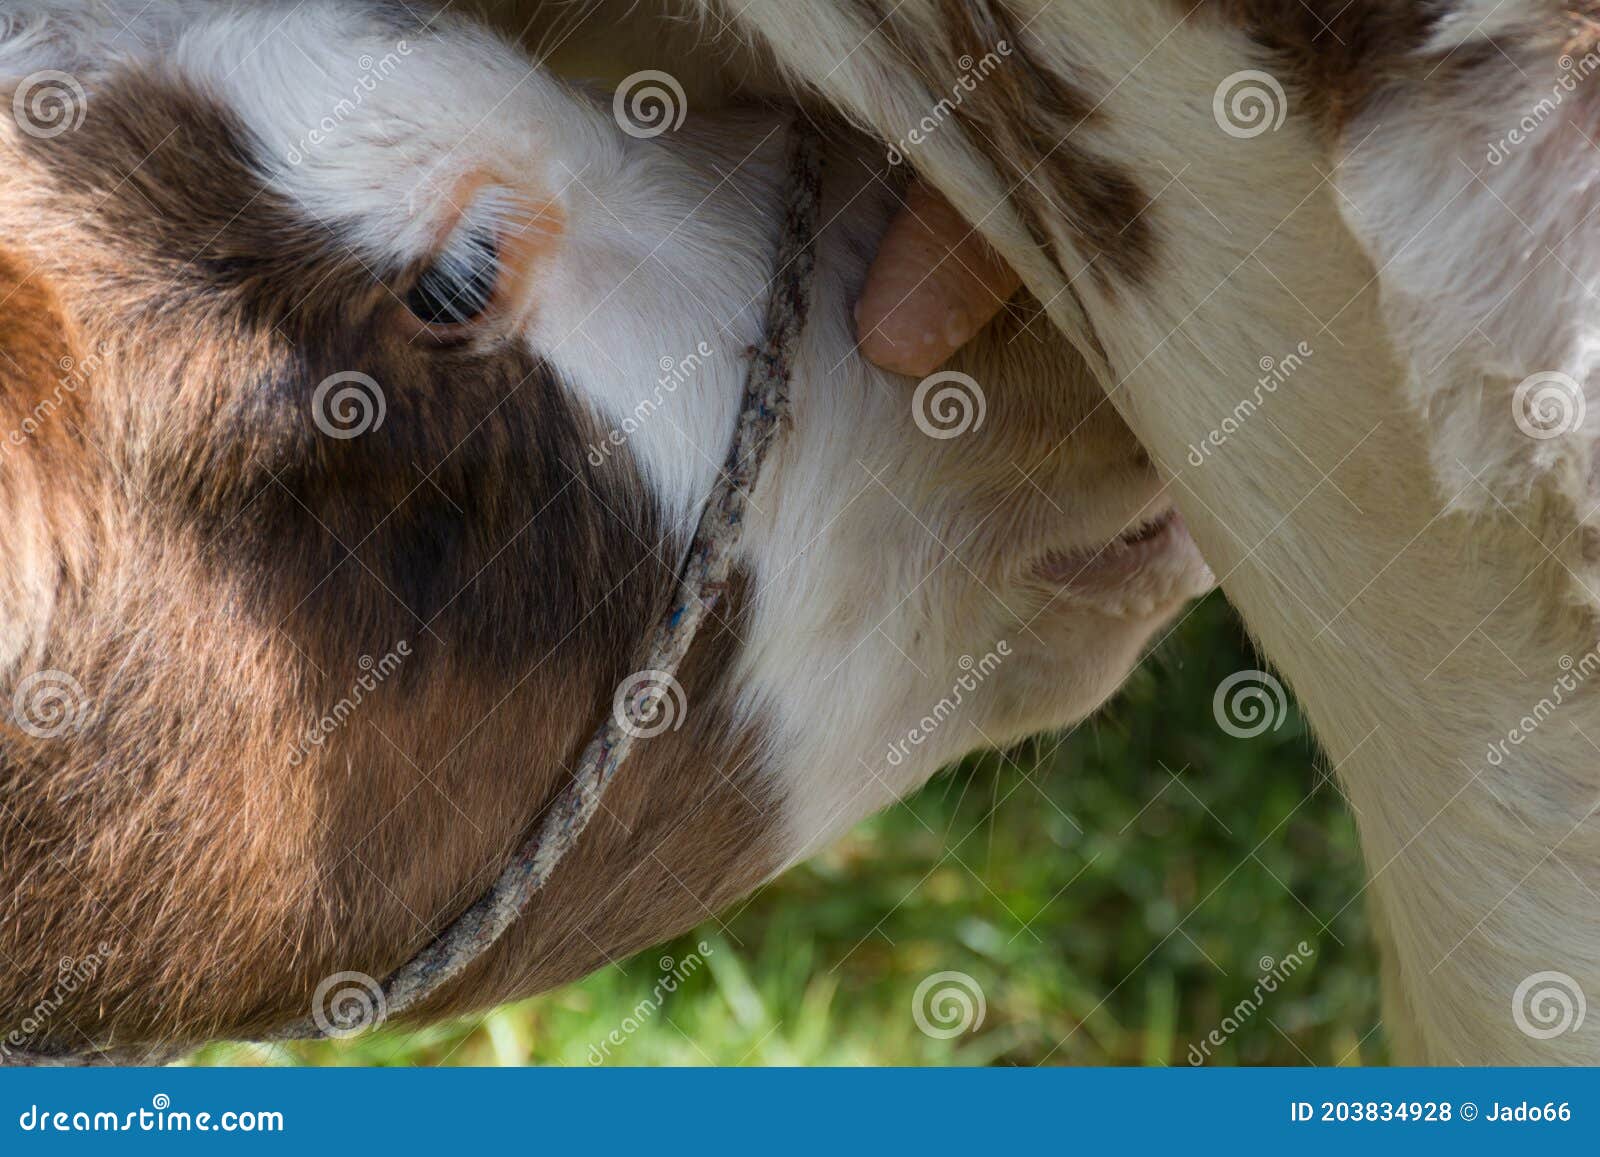 ternero recien nacido amamantando vacanewborn calf breastfeeding cow breast